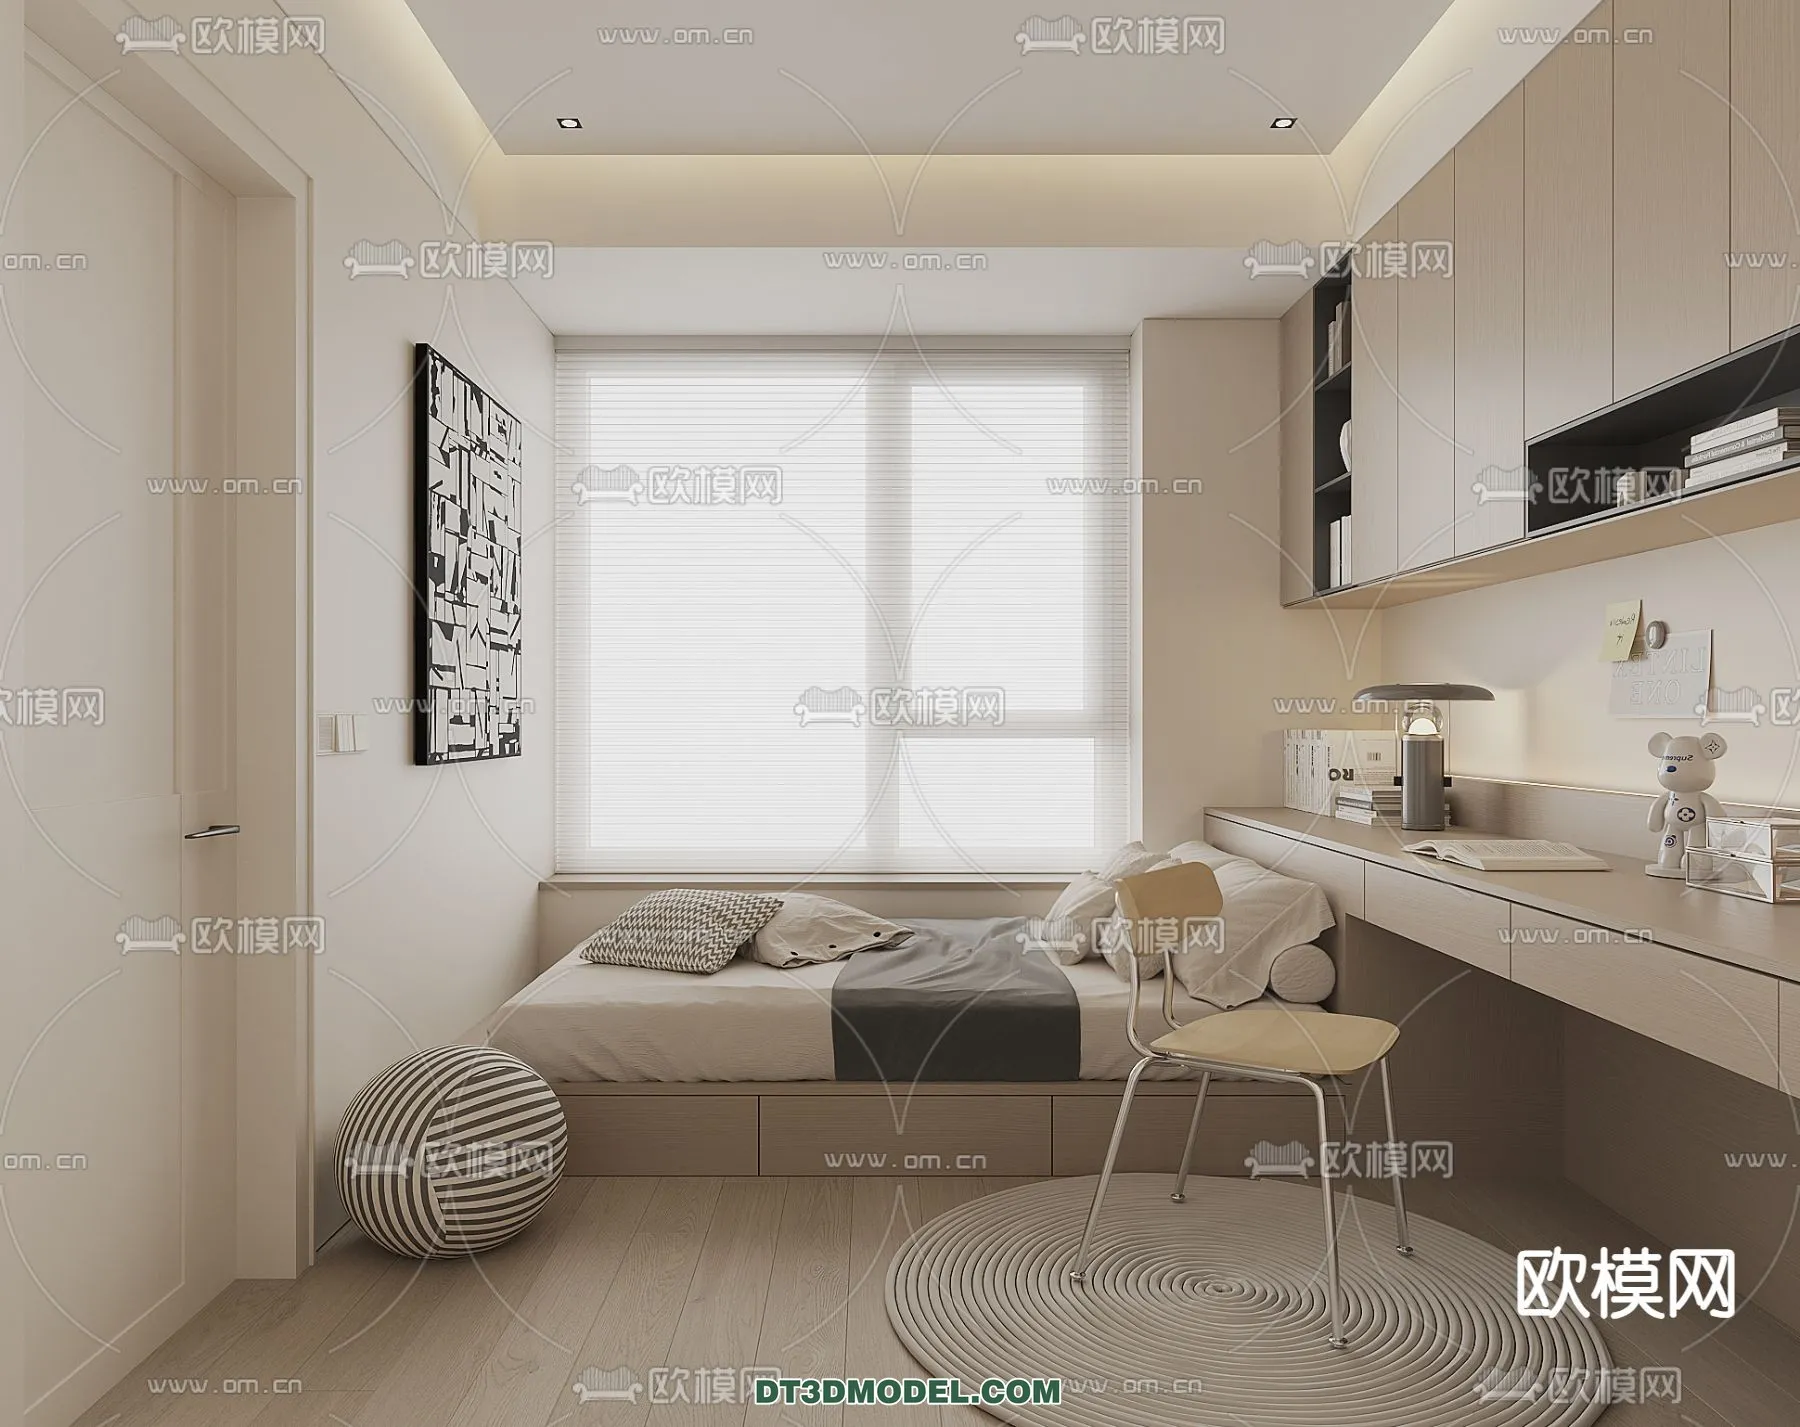 Tatami Bedroom – Japan Bedroom – 3D Scene – 066